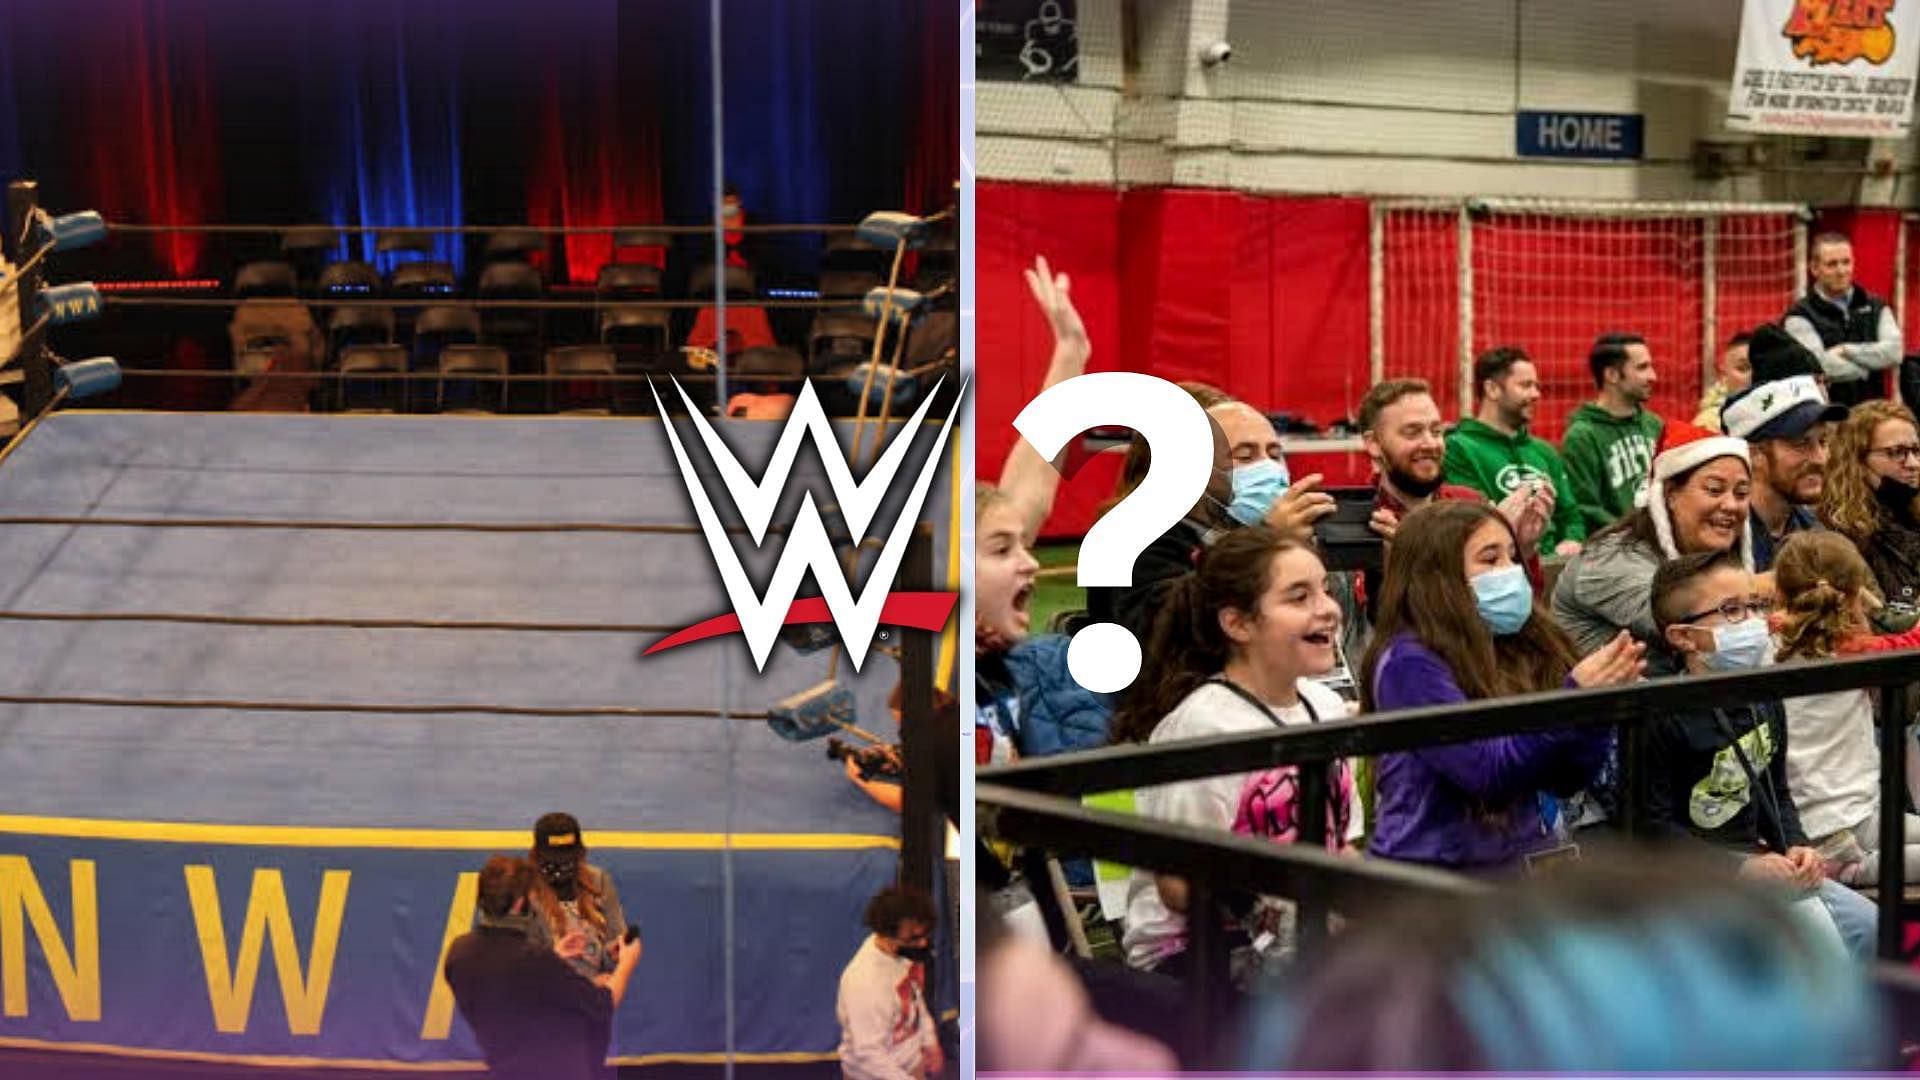 A pro wrestler chose other wrestling promotion over WWE.